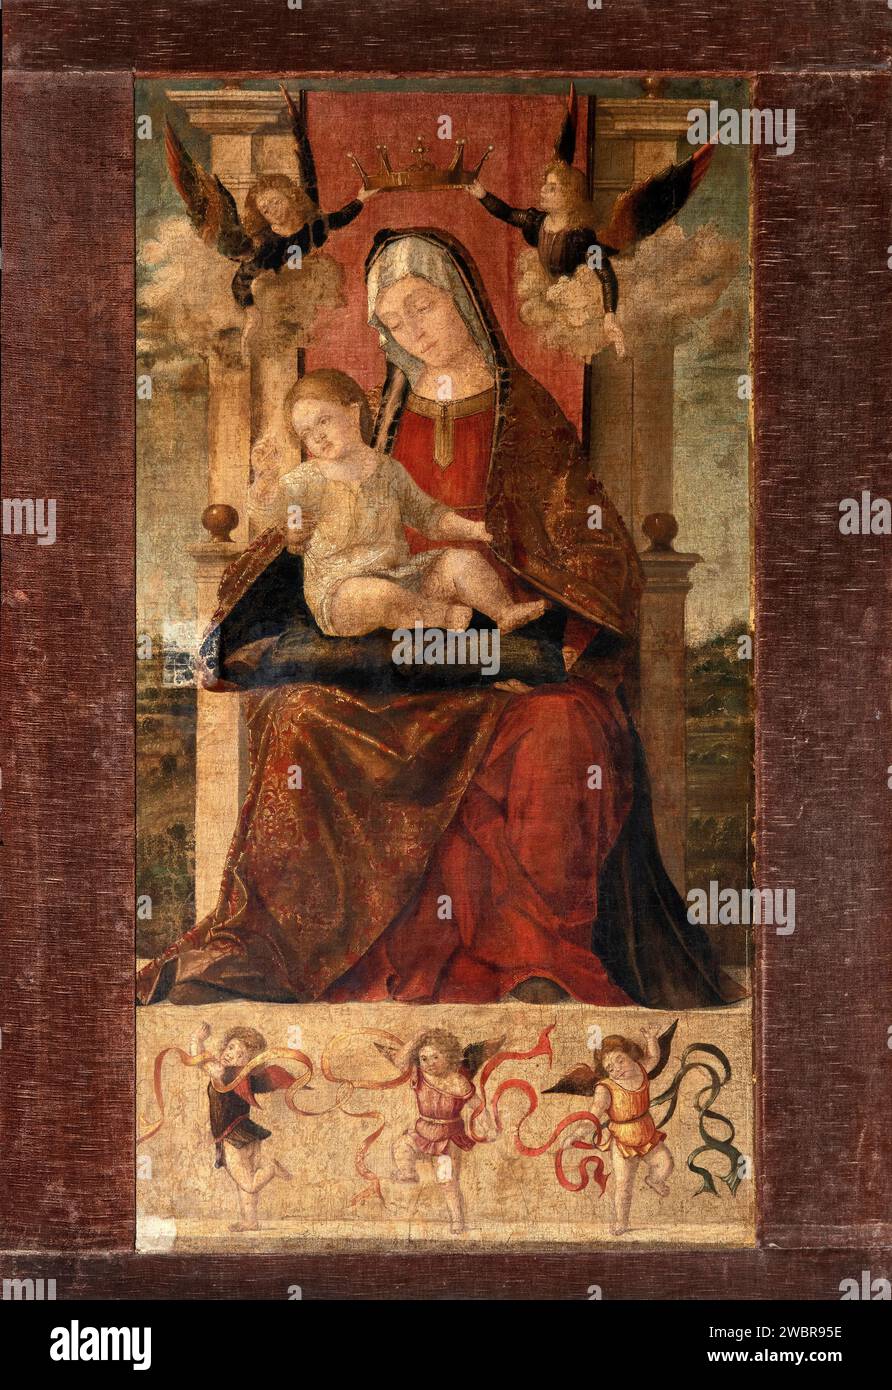 Madonna in trono col Bambino e angeli - olio su tela - Vittore Carpaccio - 1502 - Venezia, Scuola Dalmata dei Santi Giorgio e Trifone, detta anche S. Banque D'Images